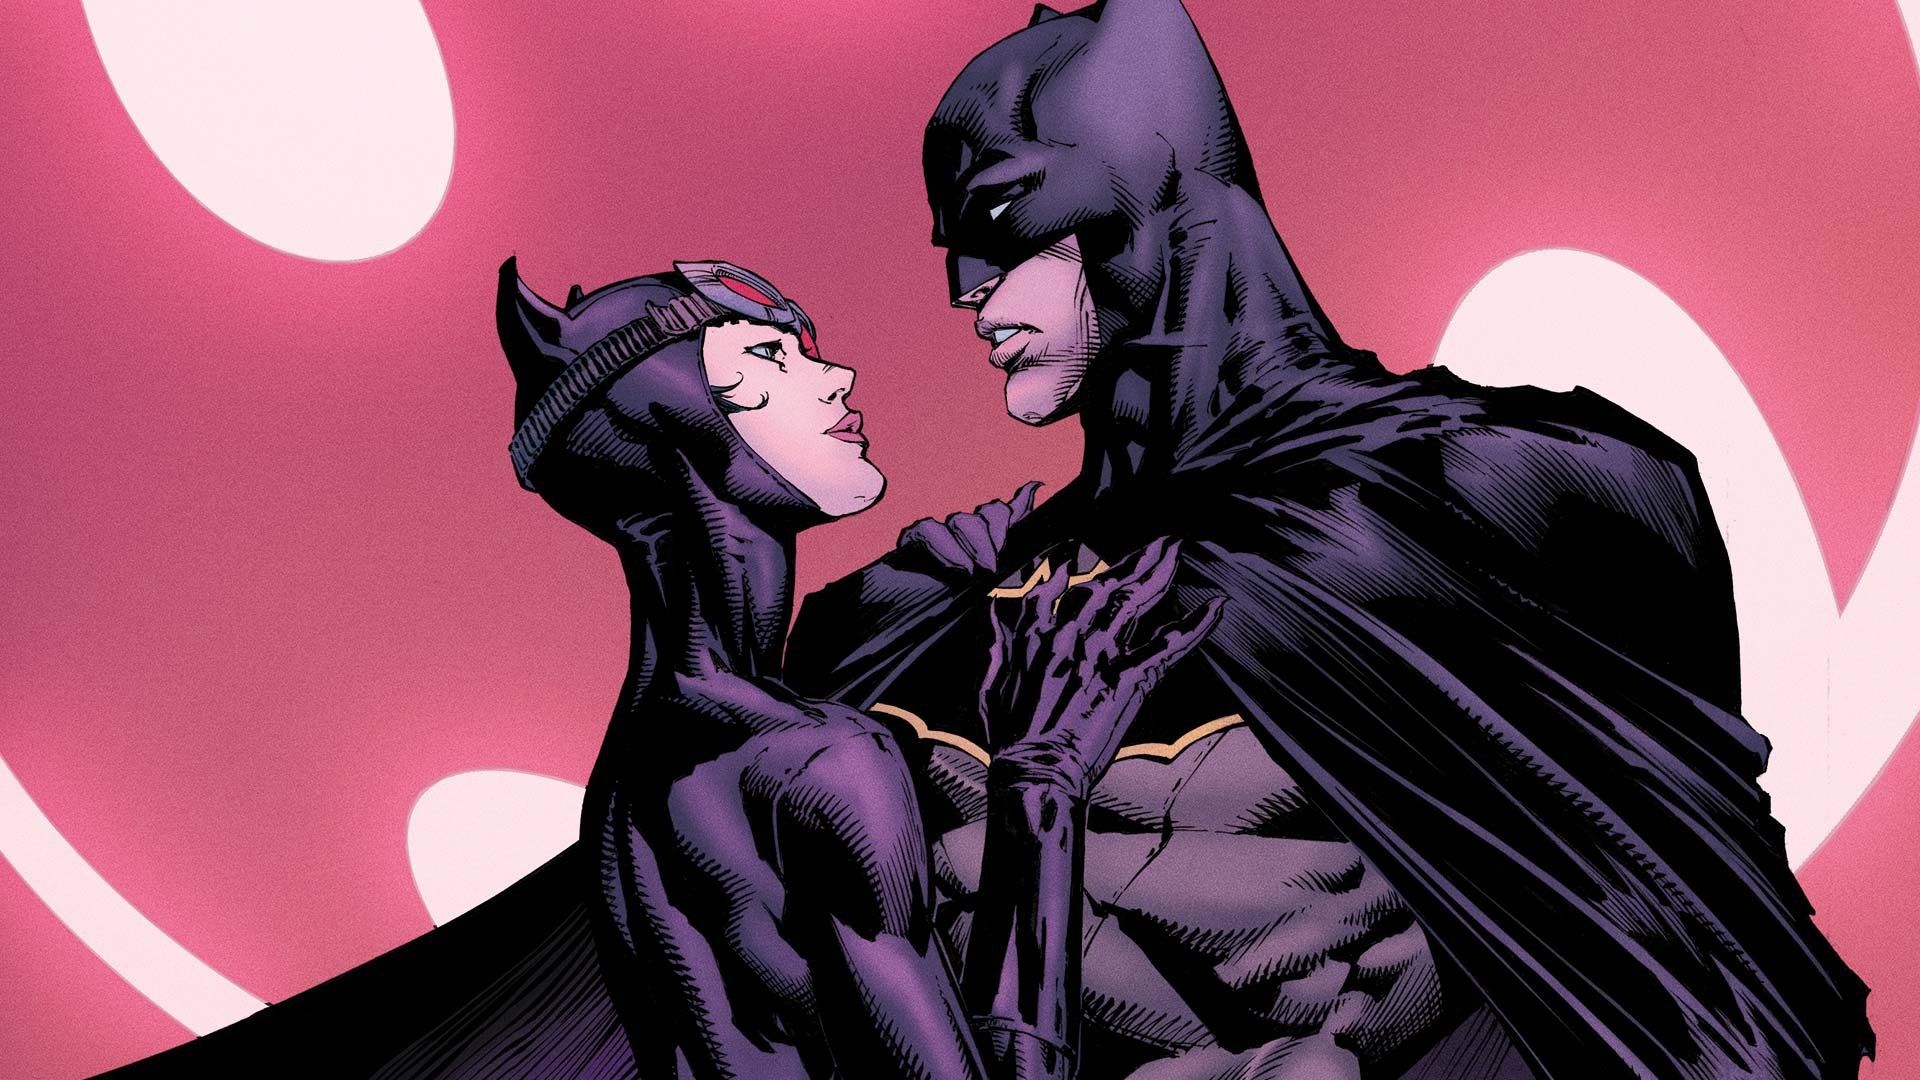 Wallpaper Batman and Catwoman, DC comics heroes 1920x1080 Full HD